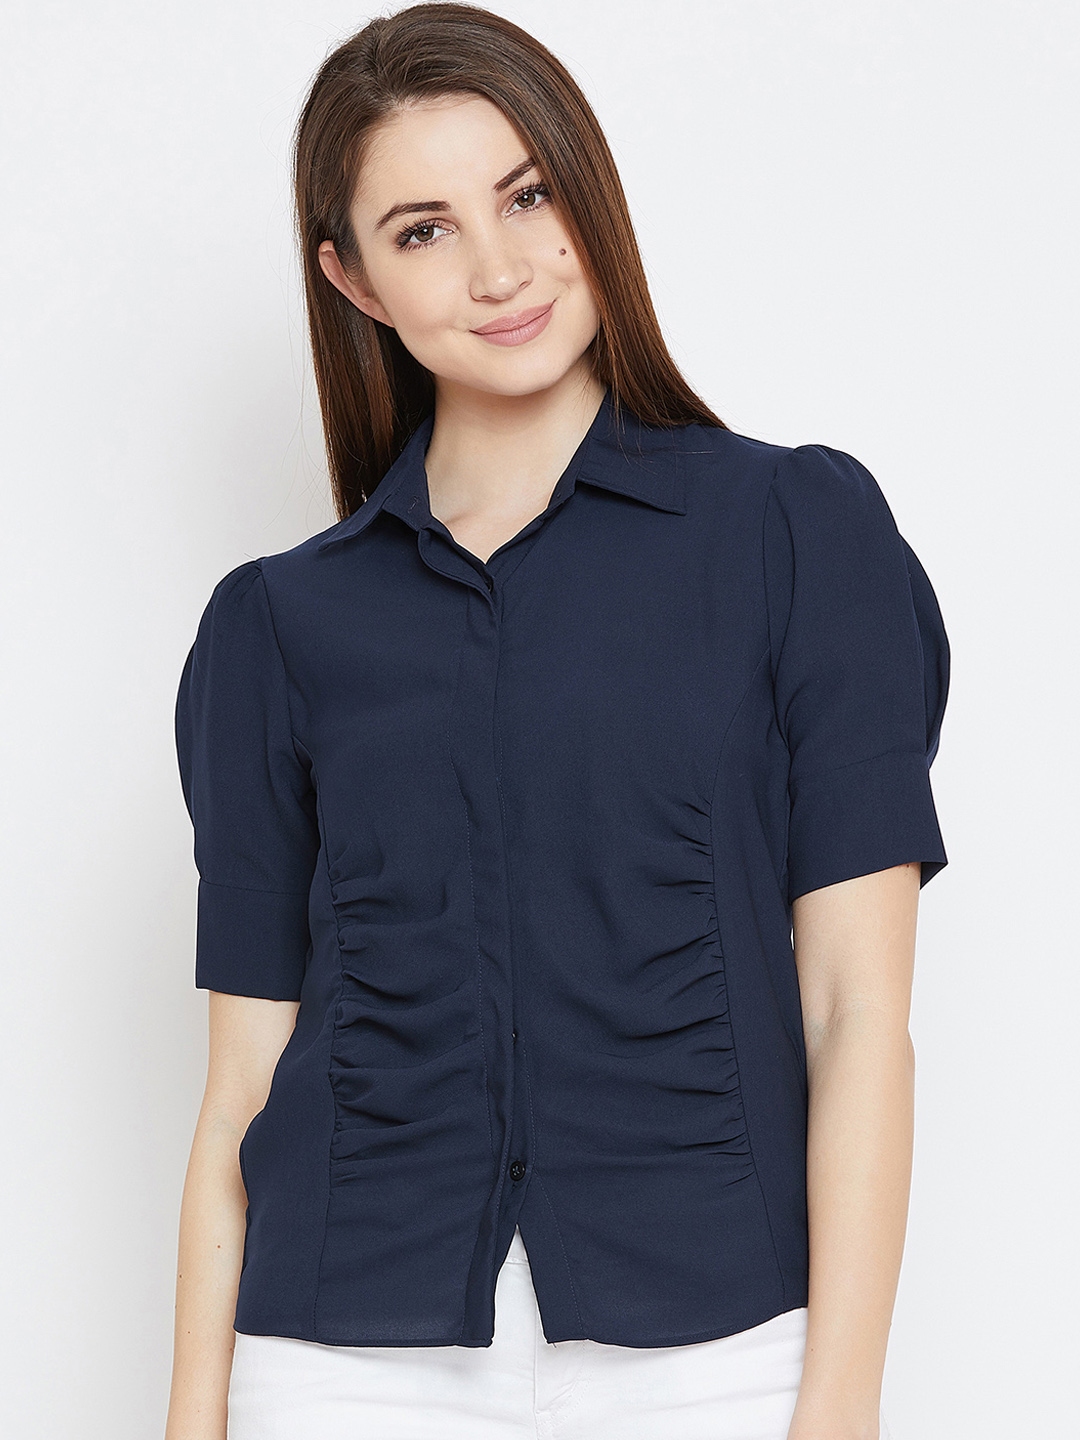 Buy Imfashini Women Navy Blue Solid Shirt Style Top - Tops for Women ...